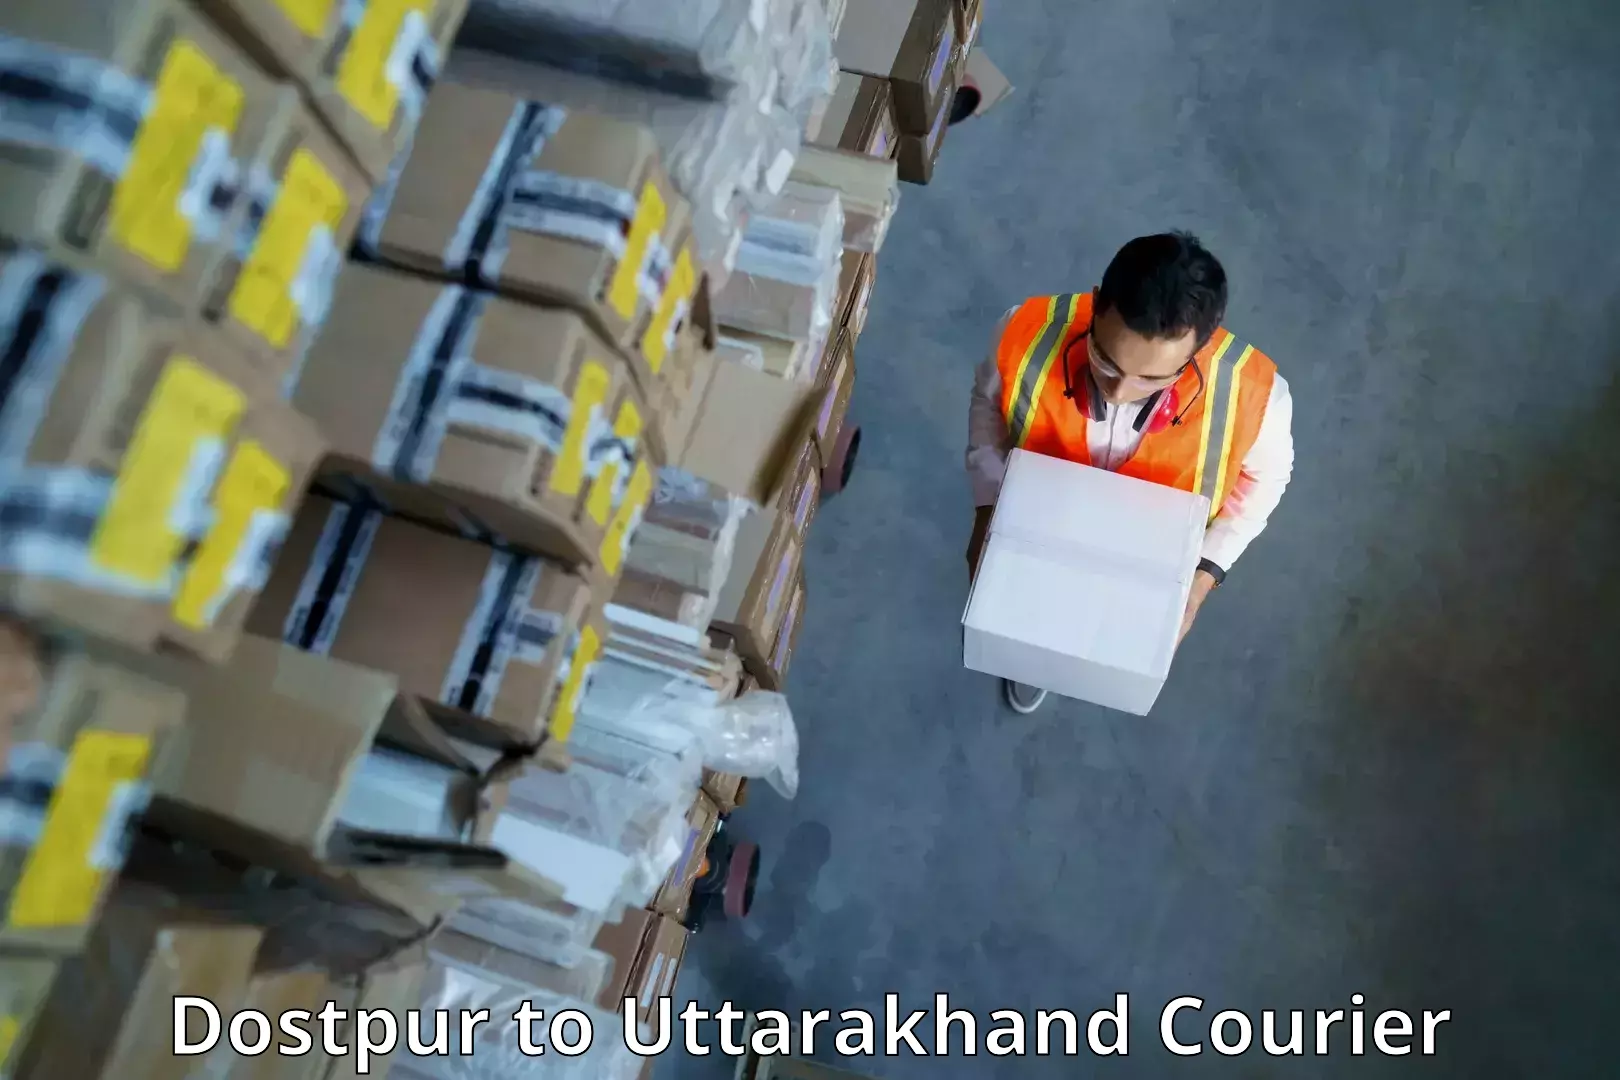 Smart courier technologies in Dostpur to Uttarakhand